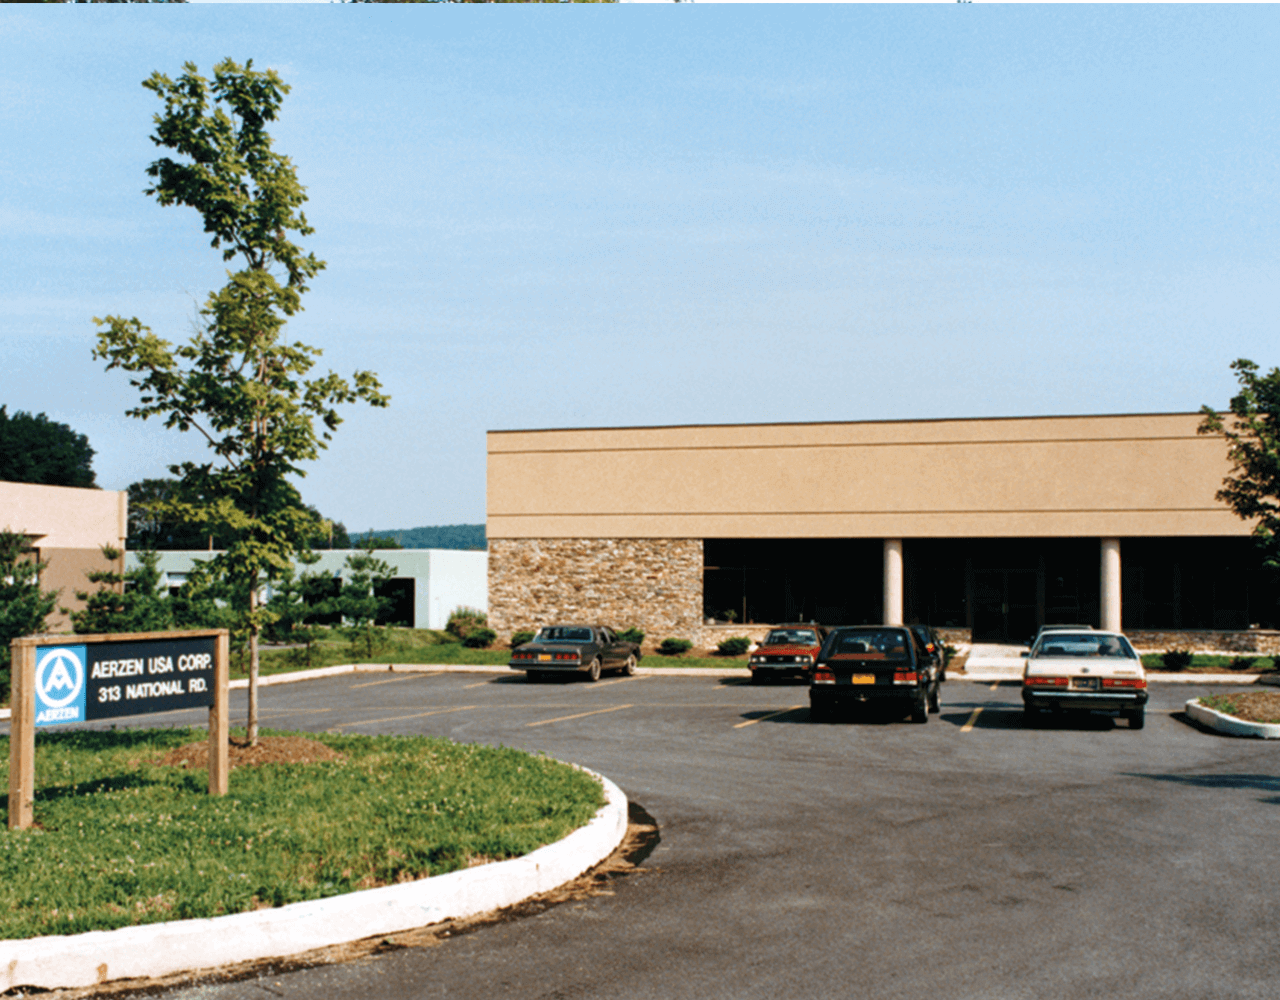 Foto dell'edificio della filiale AERZEN USA Corporation